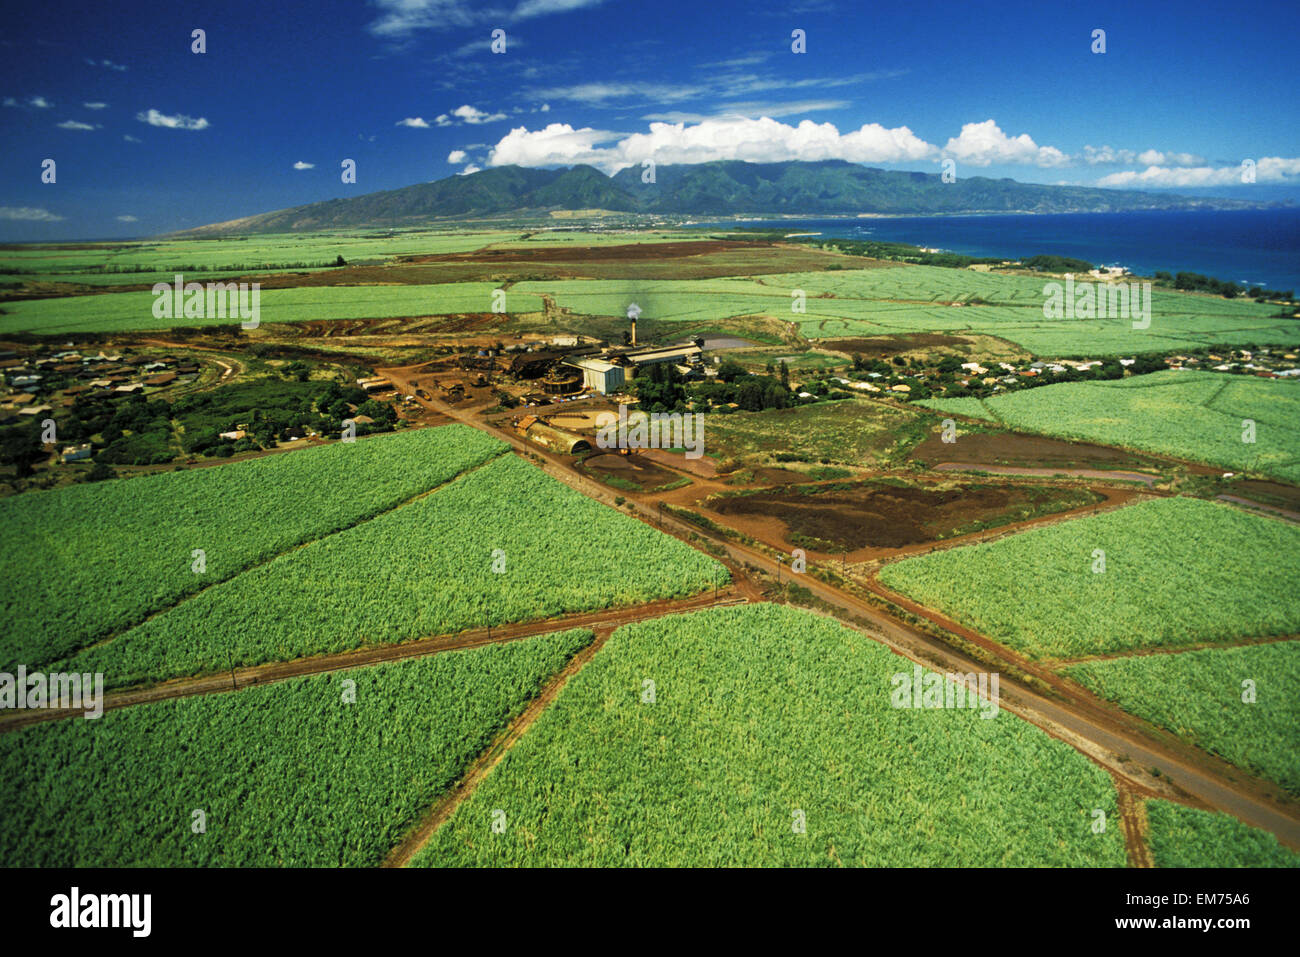 USA, Hawaii, Maui, Cane Fields and sugar mill; Paia Stock Photo